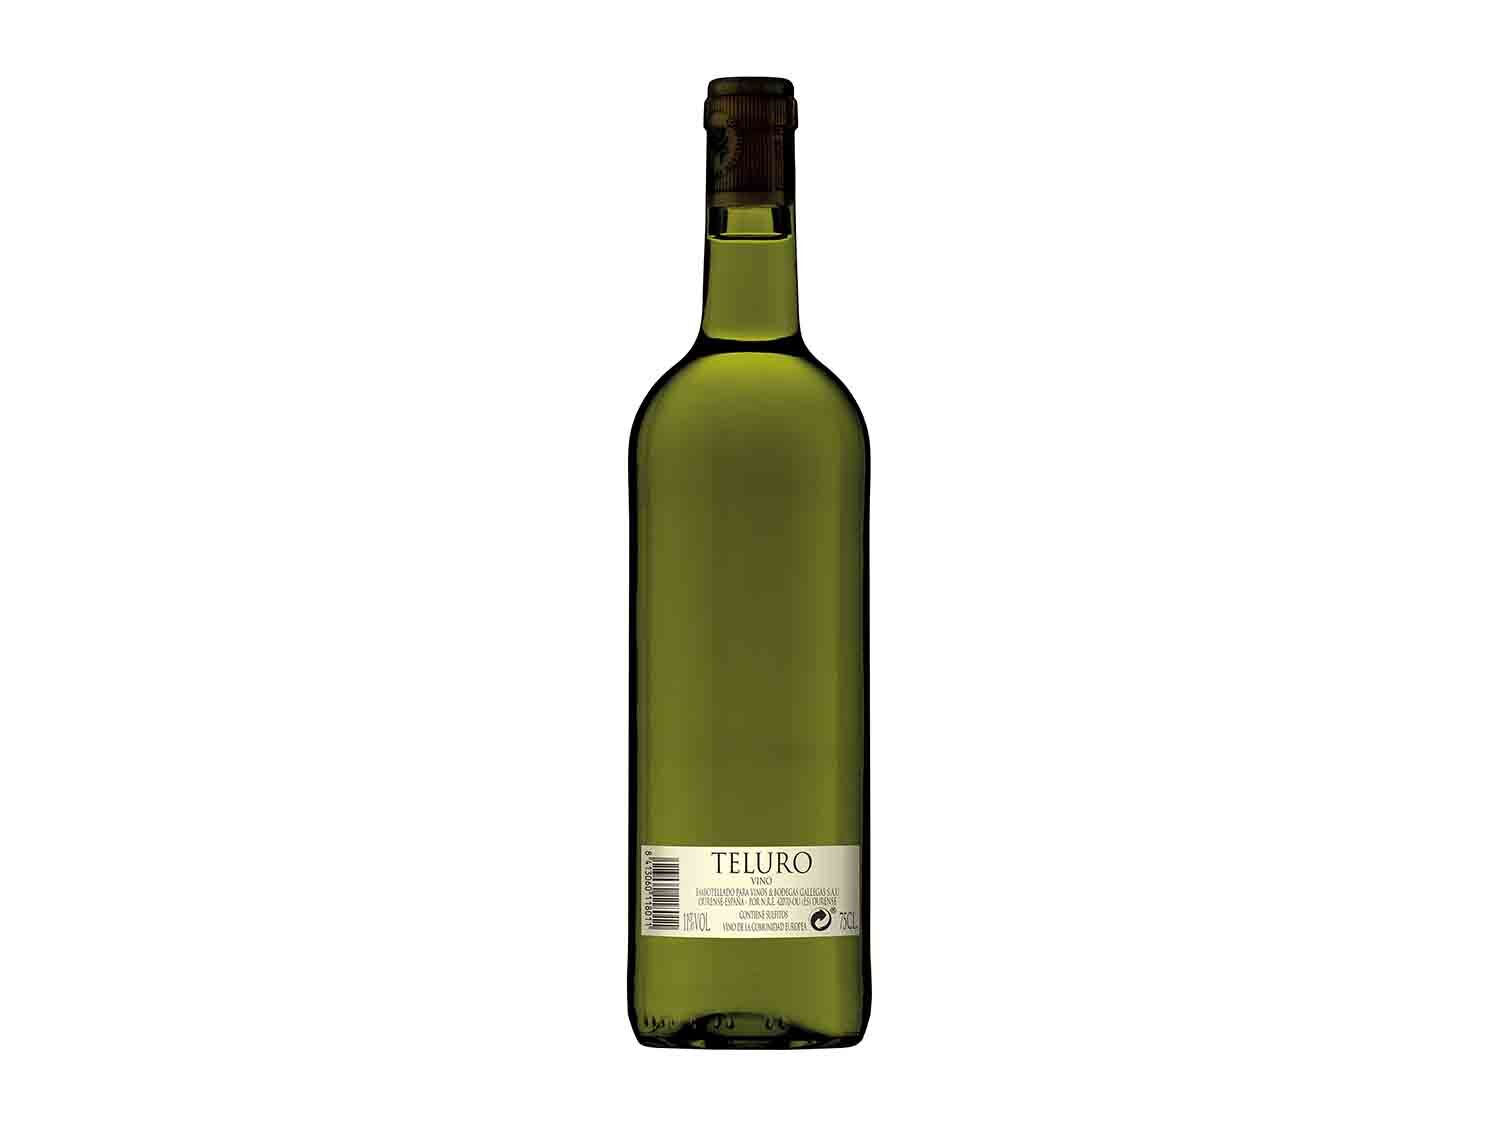 Teluro ® Vino blanco